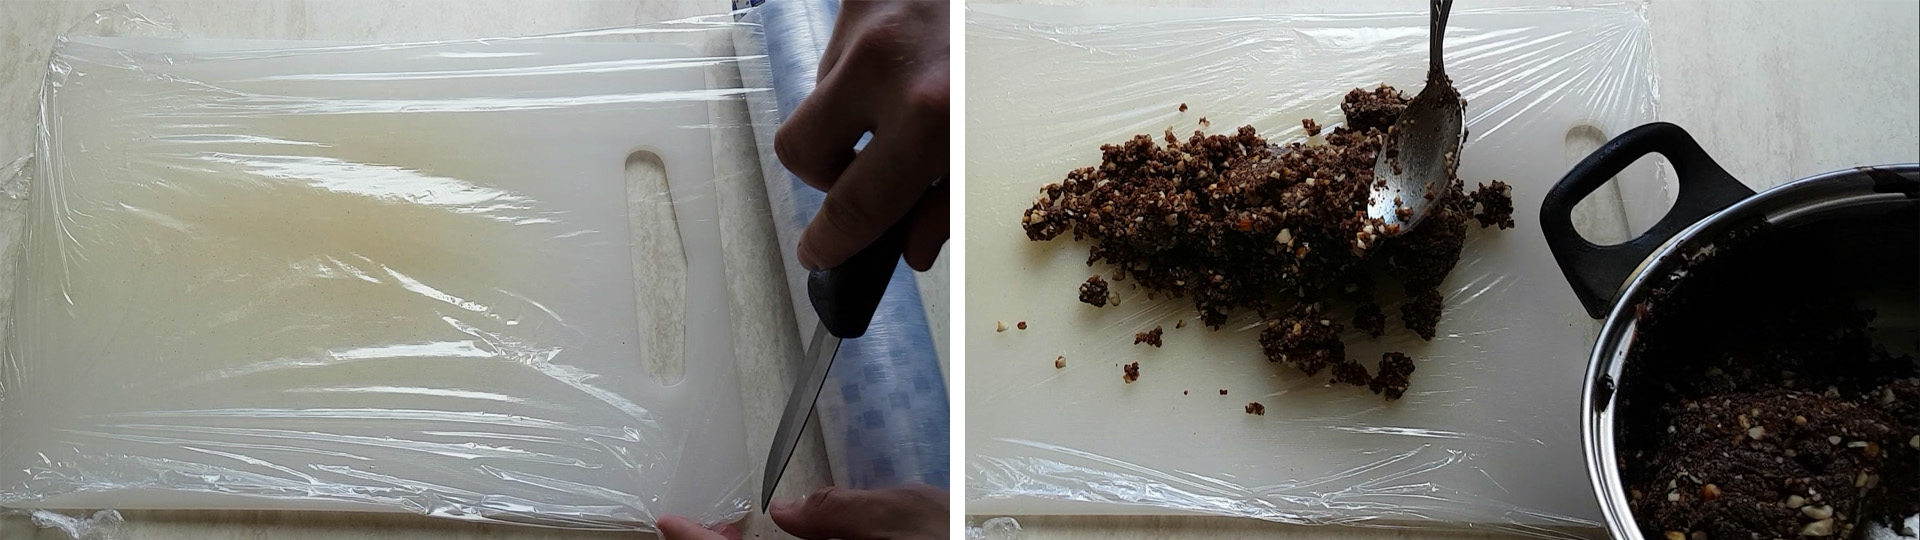 Шаг 5 рецепта: процесс размещения итоговой смеси для шоколадной колбасы на пищевой пленке.